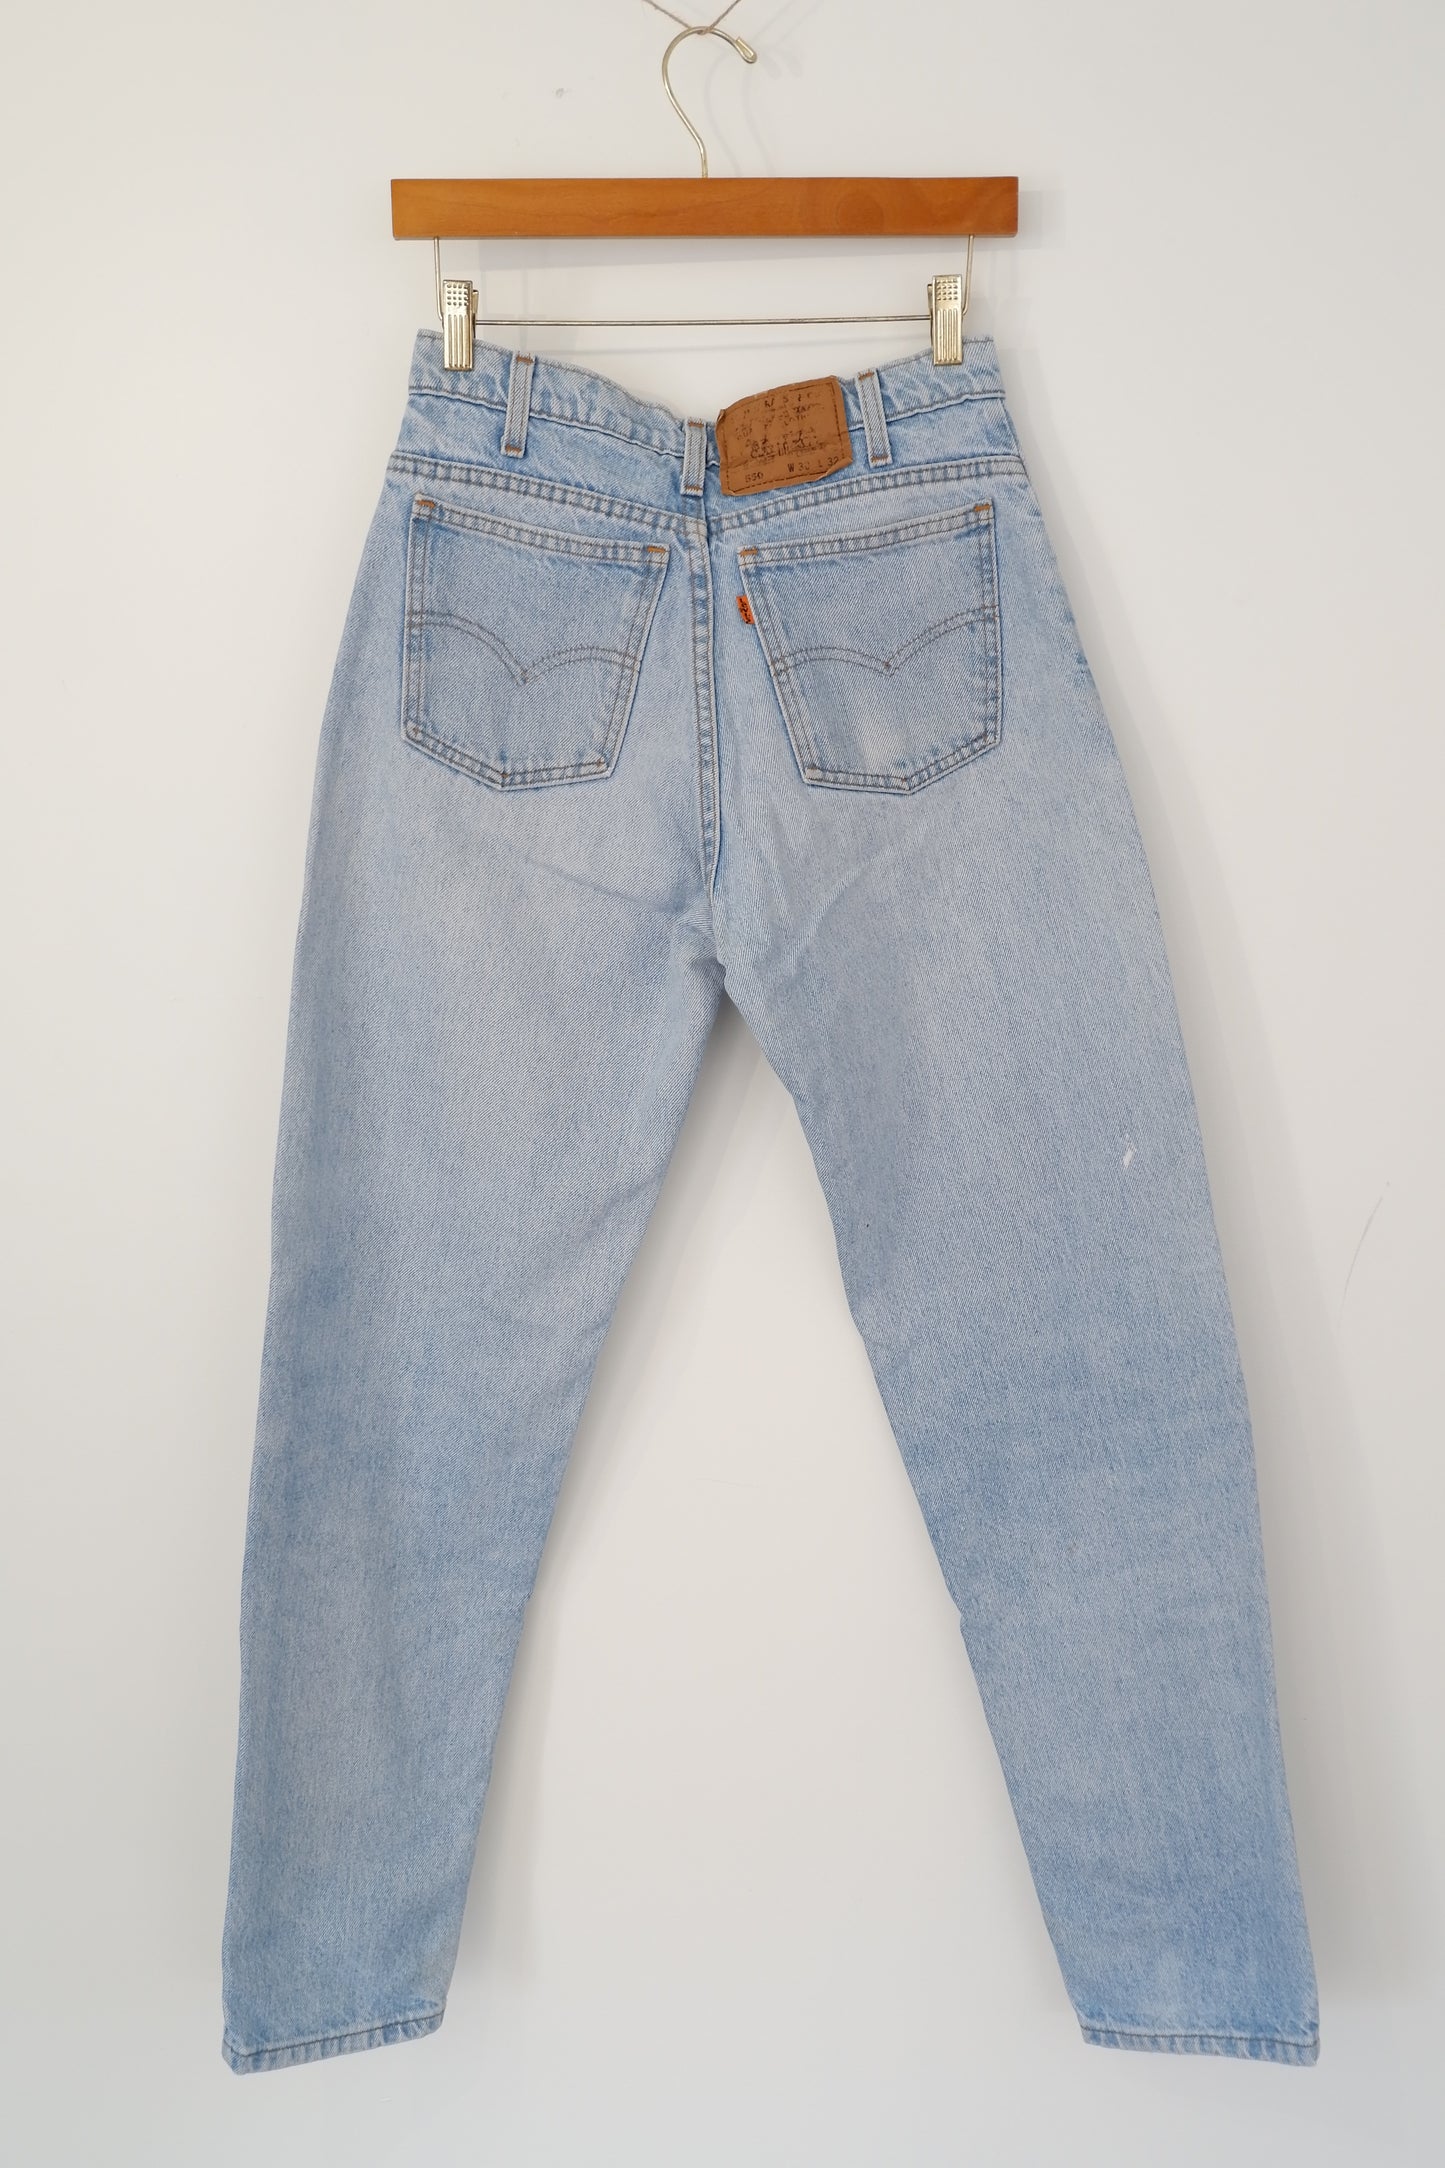 Levis Vintage 550 Light Wash Tapered Leg Jeans - 28